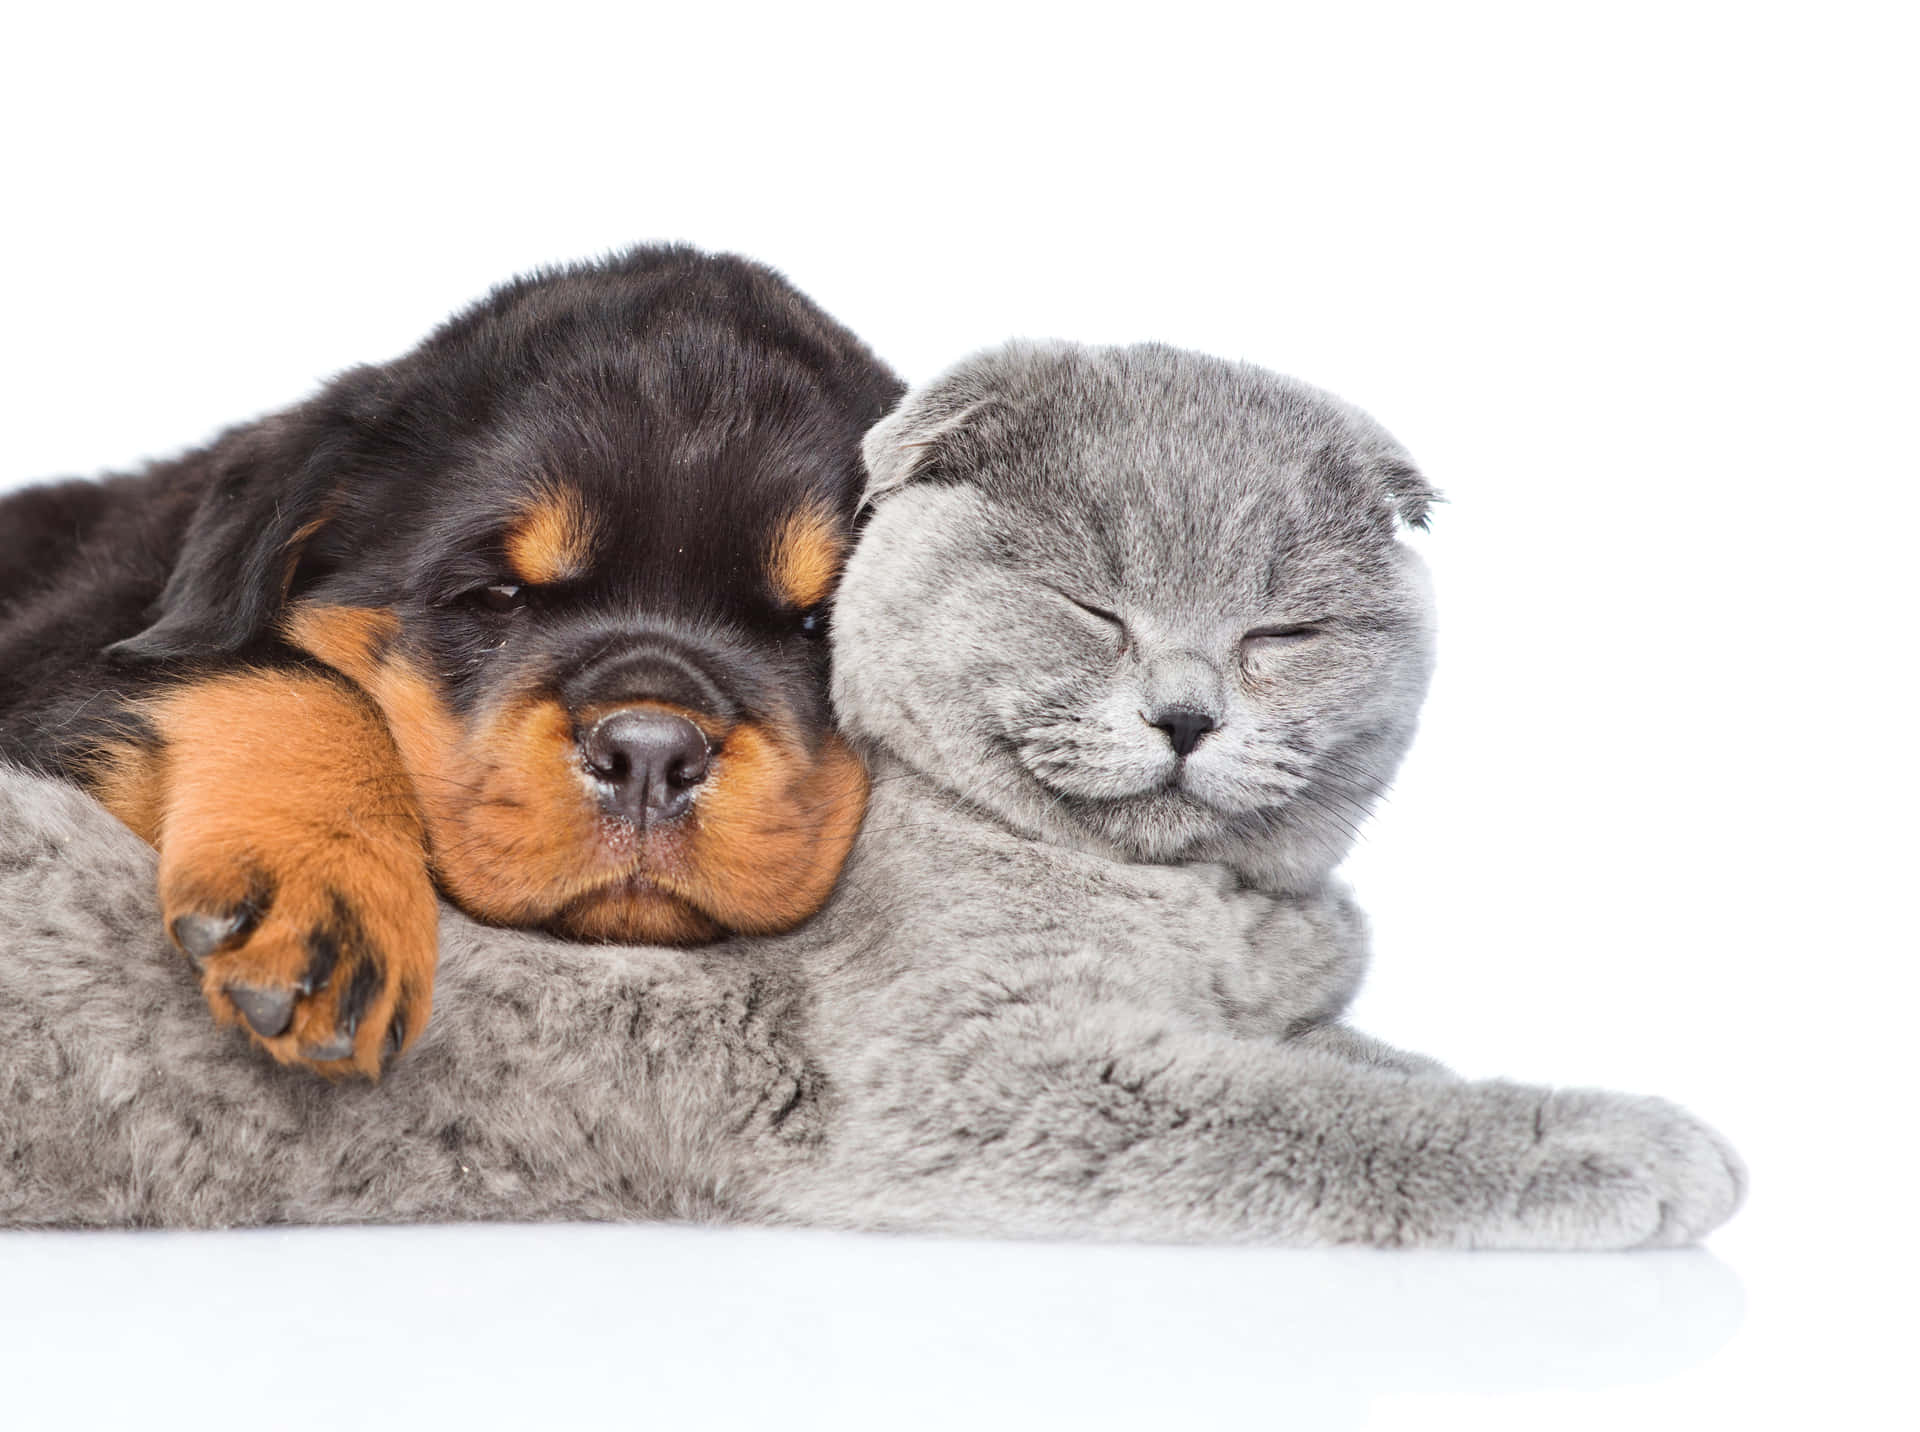 “To af de bedste venner nogensinde: En killing og en hund” Wallpaper